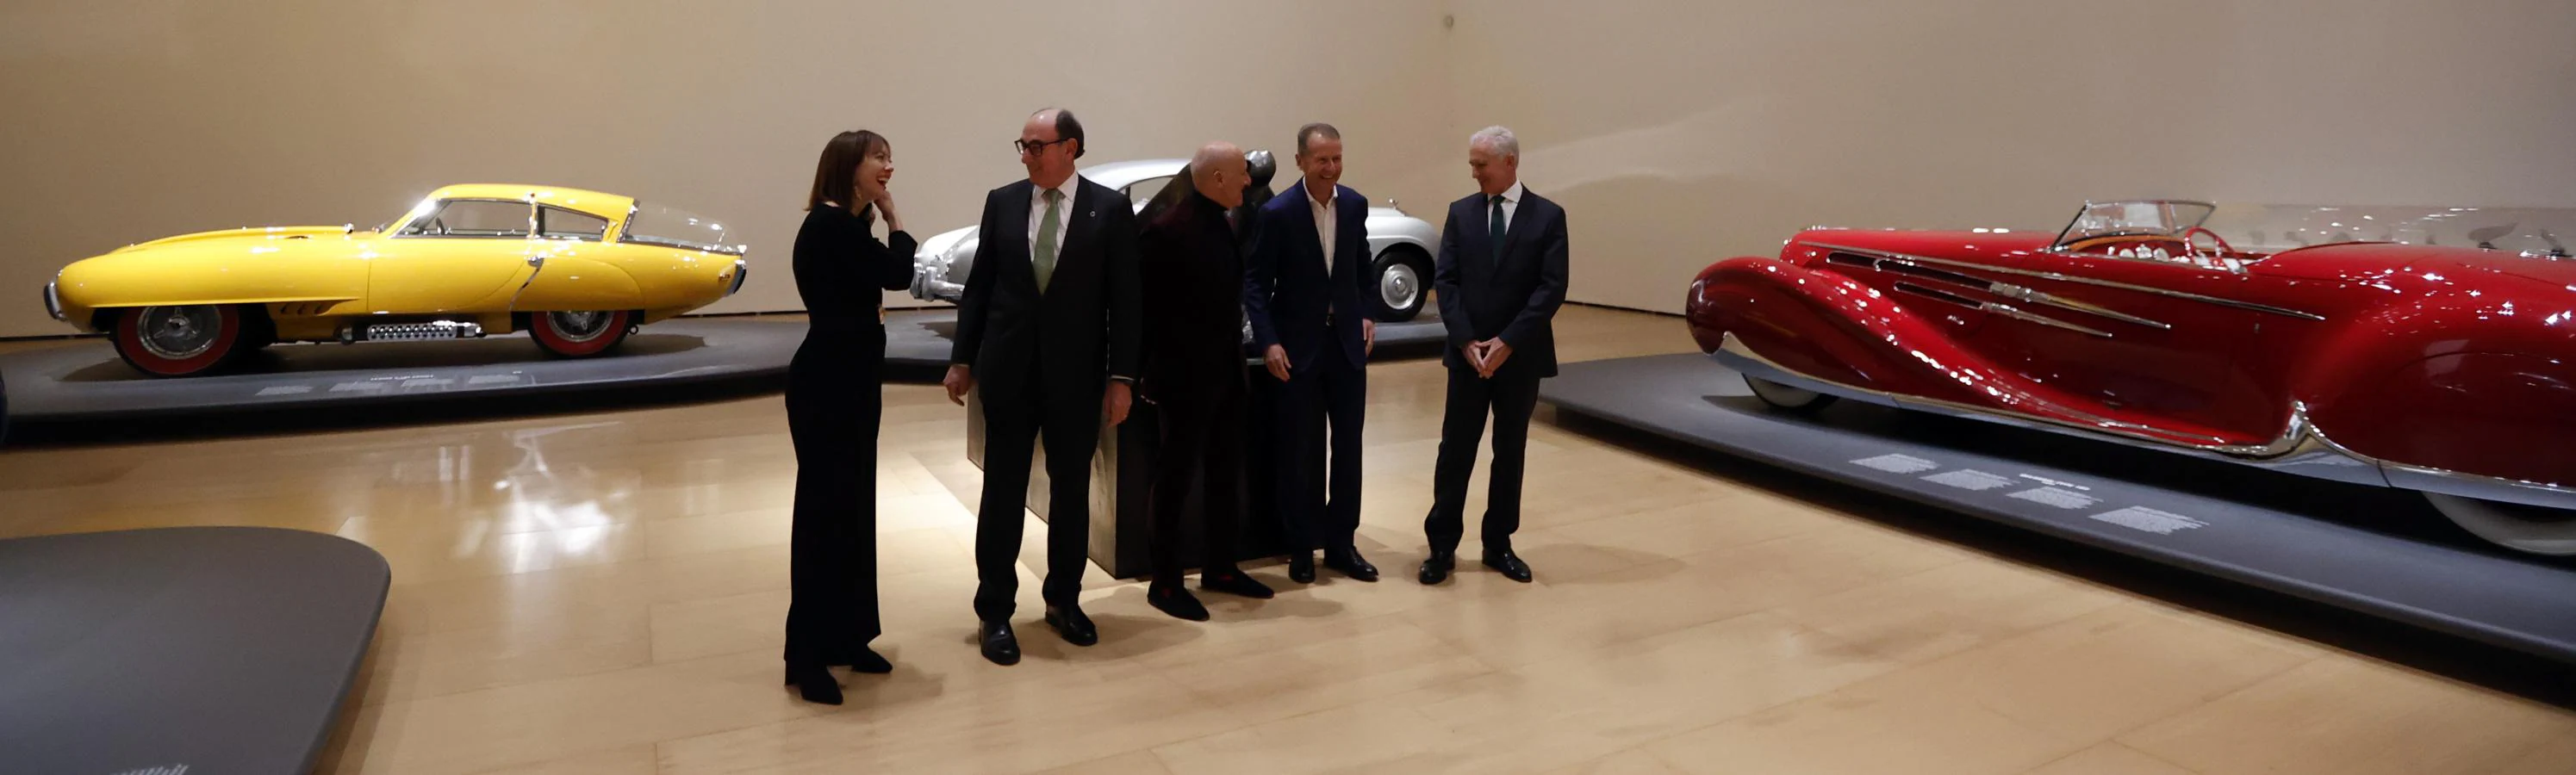 Los comisarios Norman Foster, (c) y Lekha Hileman (i) junto al presidente de Iberdrola, Ignacio Galán (2i) el CEO del grupo Volkswagen Herbert Diess, (2d) y el director del museo Juan Ignacio Vidarte, (d). 